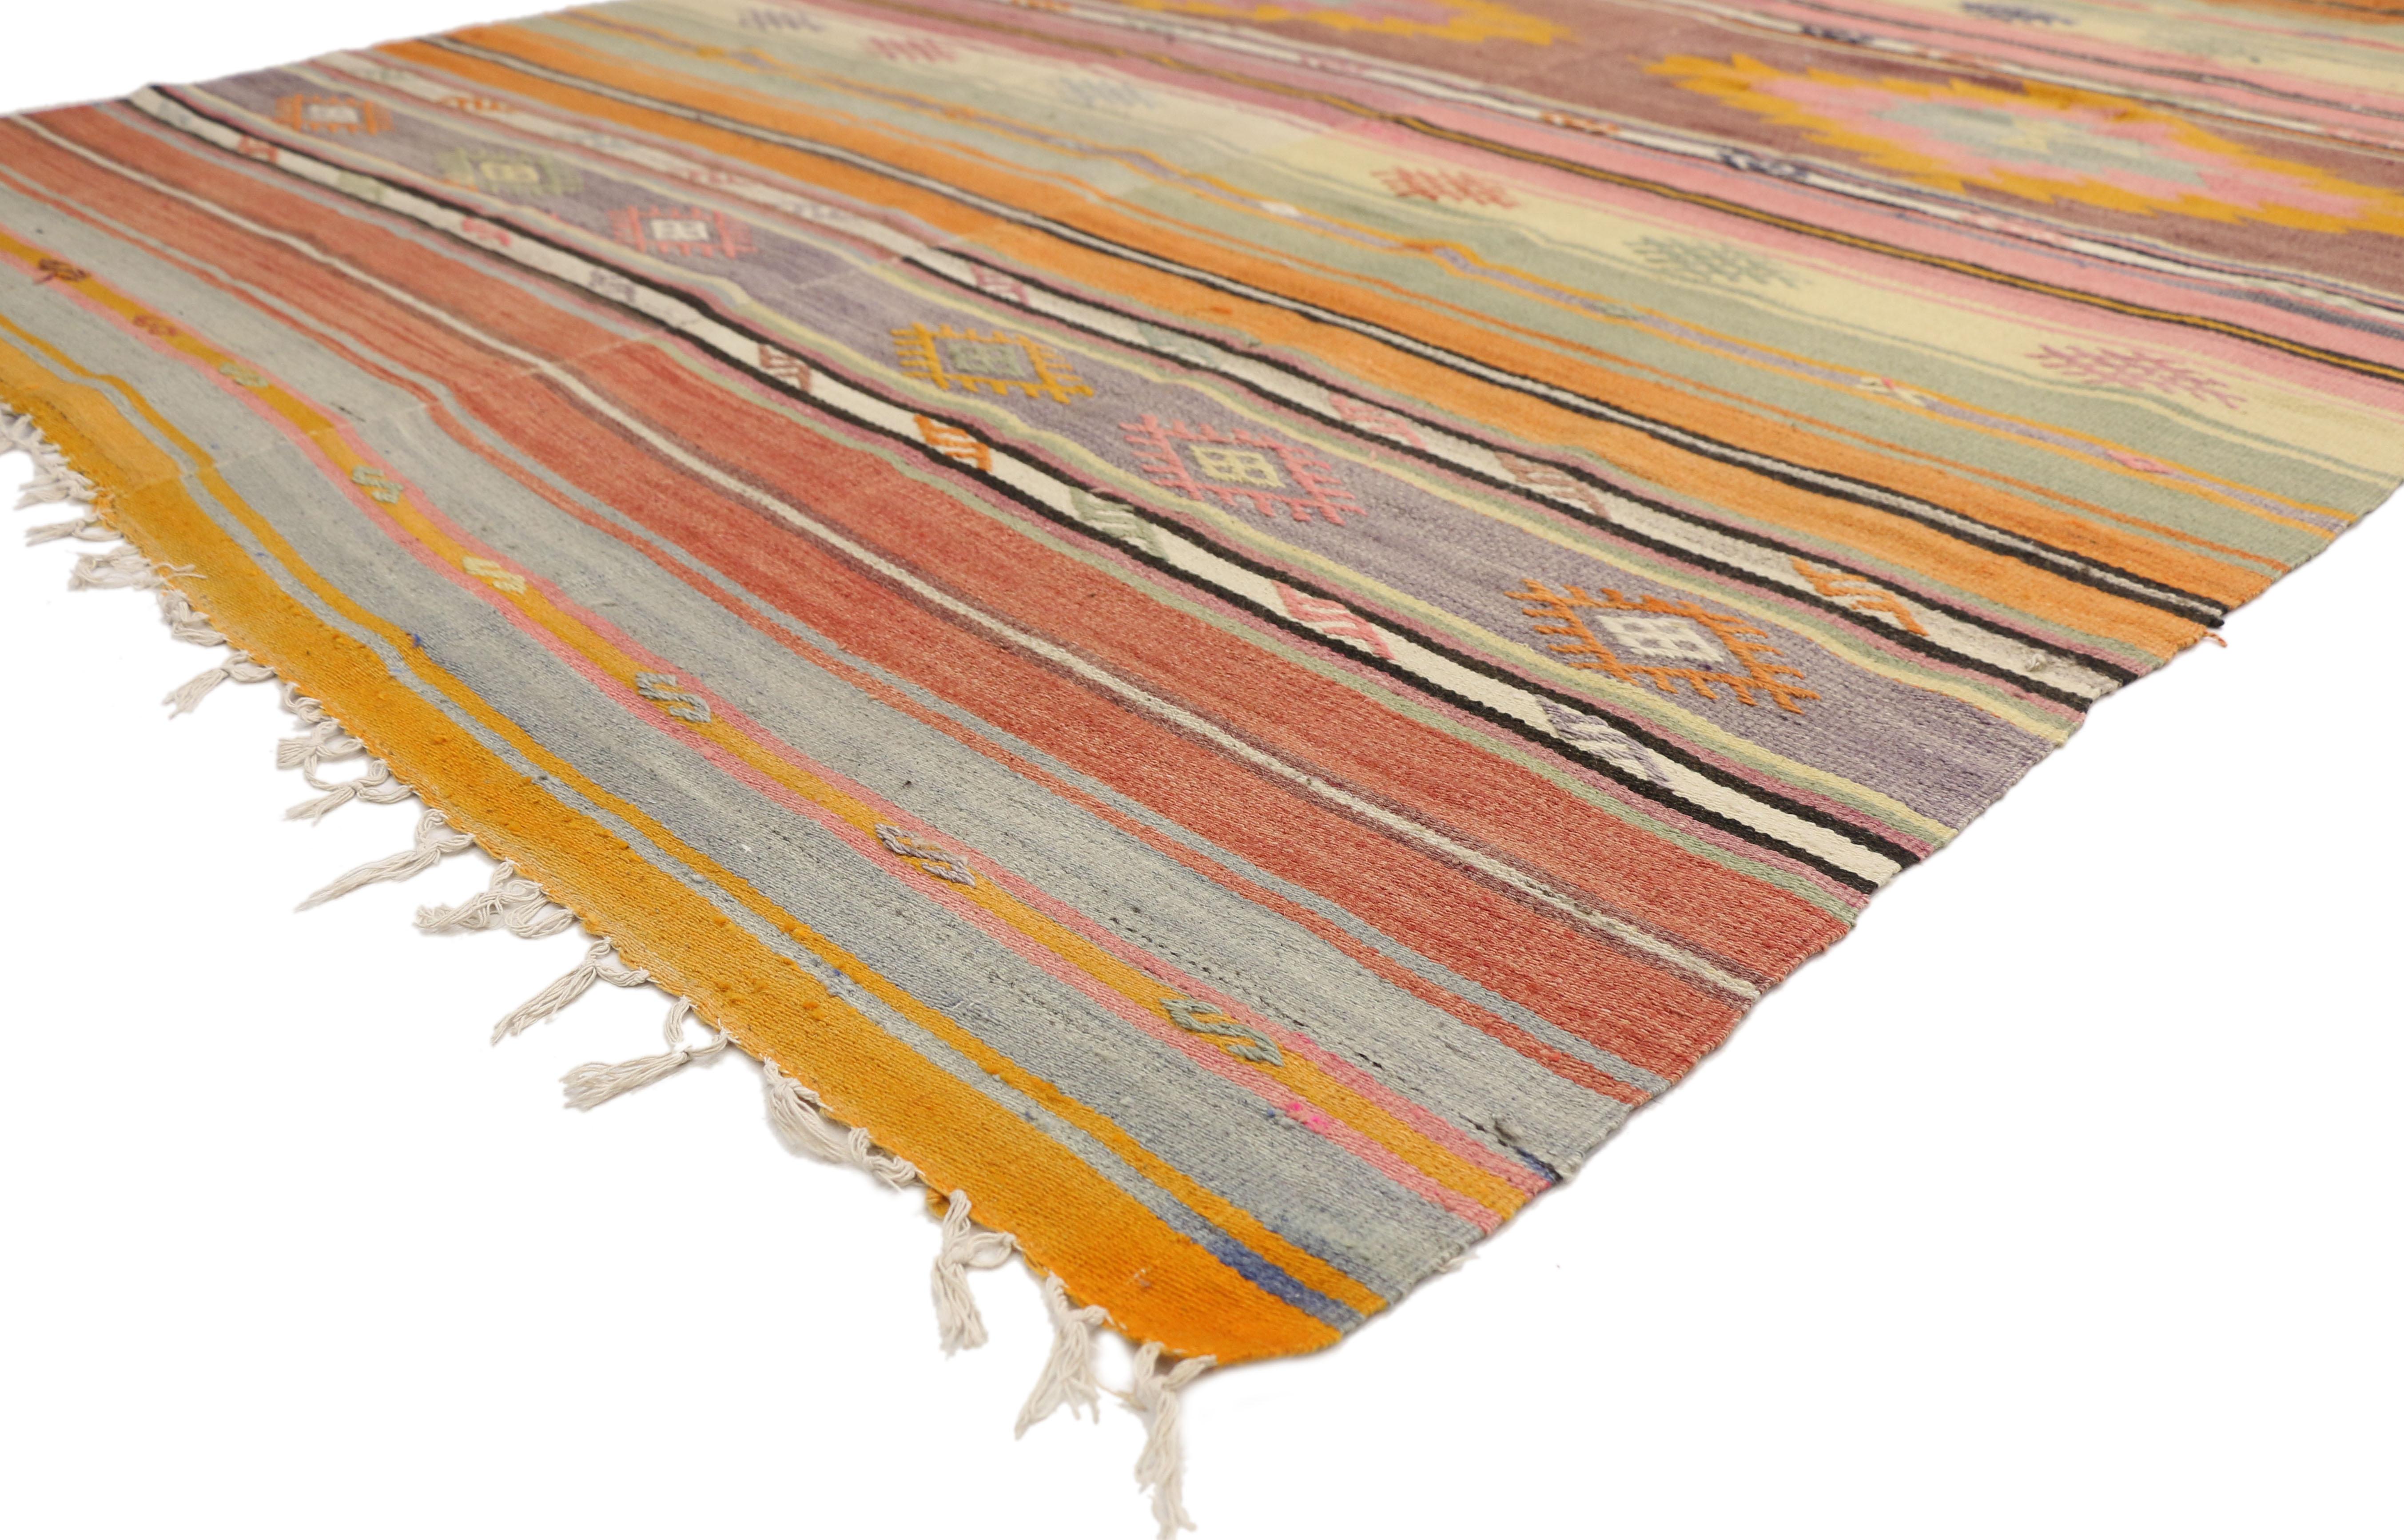 51271, tapis Kilim turc vintage avec style bohème chic du sud-ouest, tapis à tissage plat. Mesures : 05'06 x 08'09. Avec ses formes géométriques audacieuses, ses couleurs vives et son style aztèque, ce tapis Kilim turc vintage en laine tissé à la